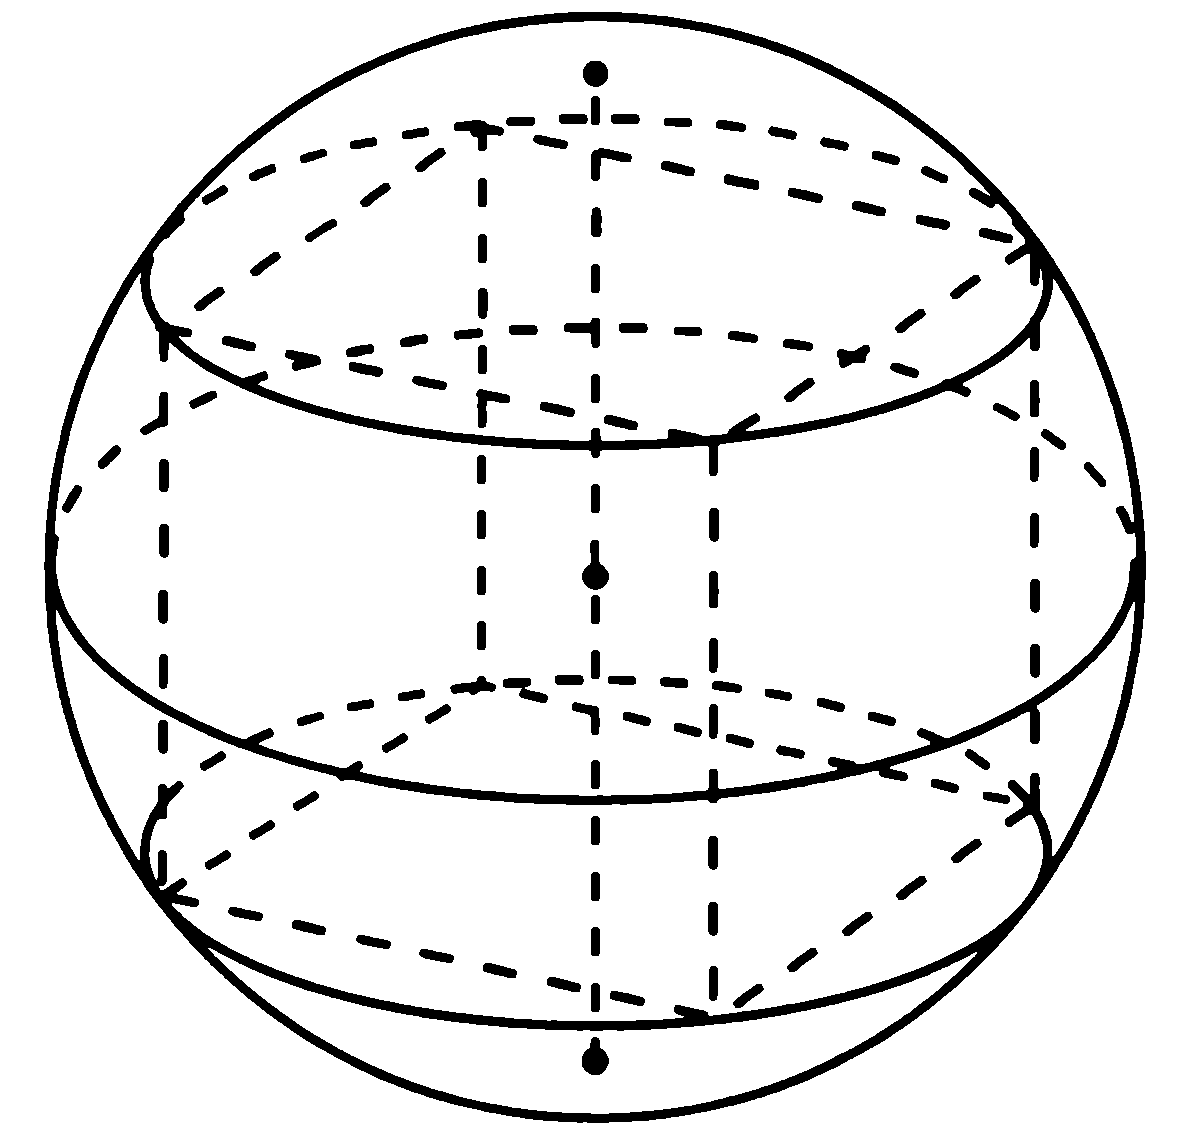 Площадь шара описанного около куба. Сфера описанная вокруг Куба. Радиус описанной вокруг Куба сферы. Шар описанный около Куба. Четырехугольная Призма вписанная в шар.